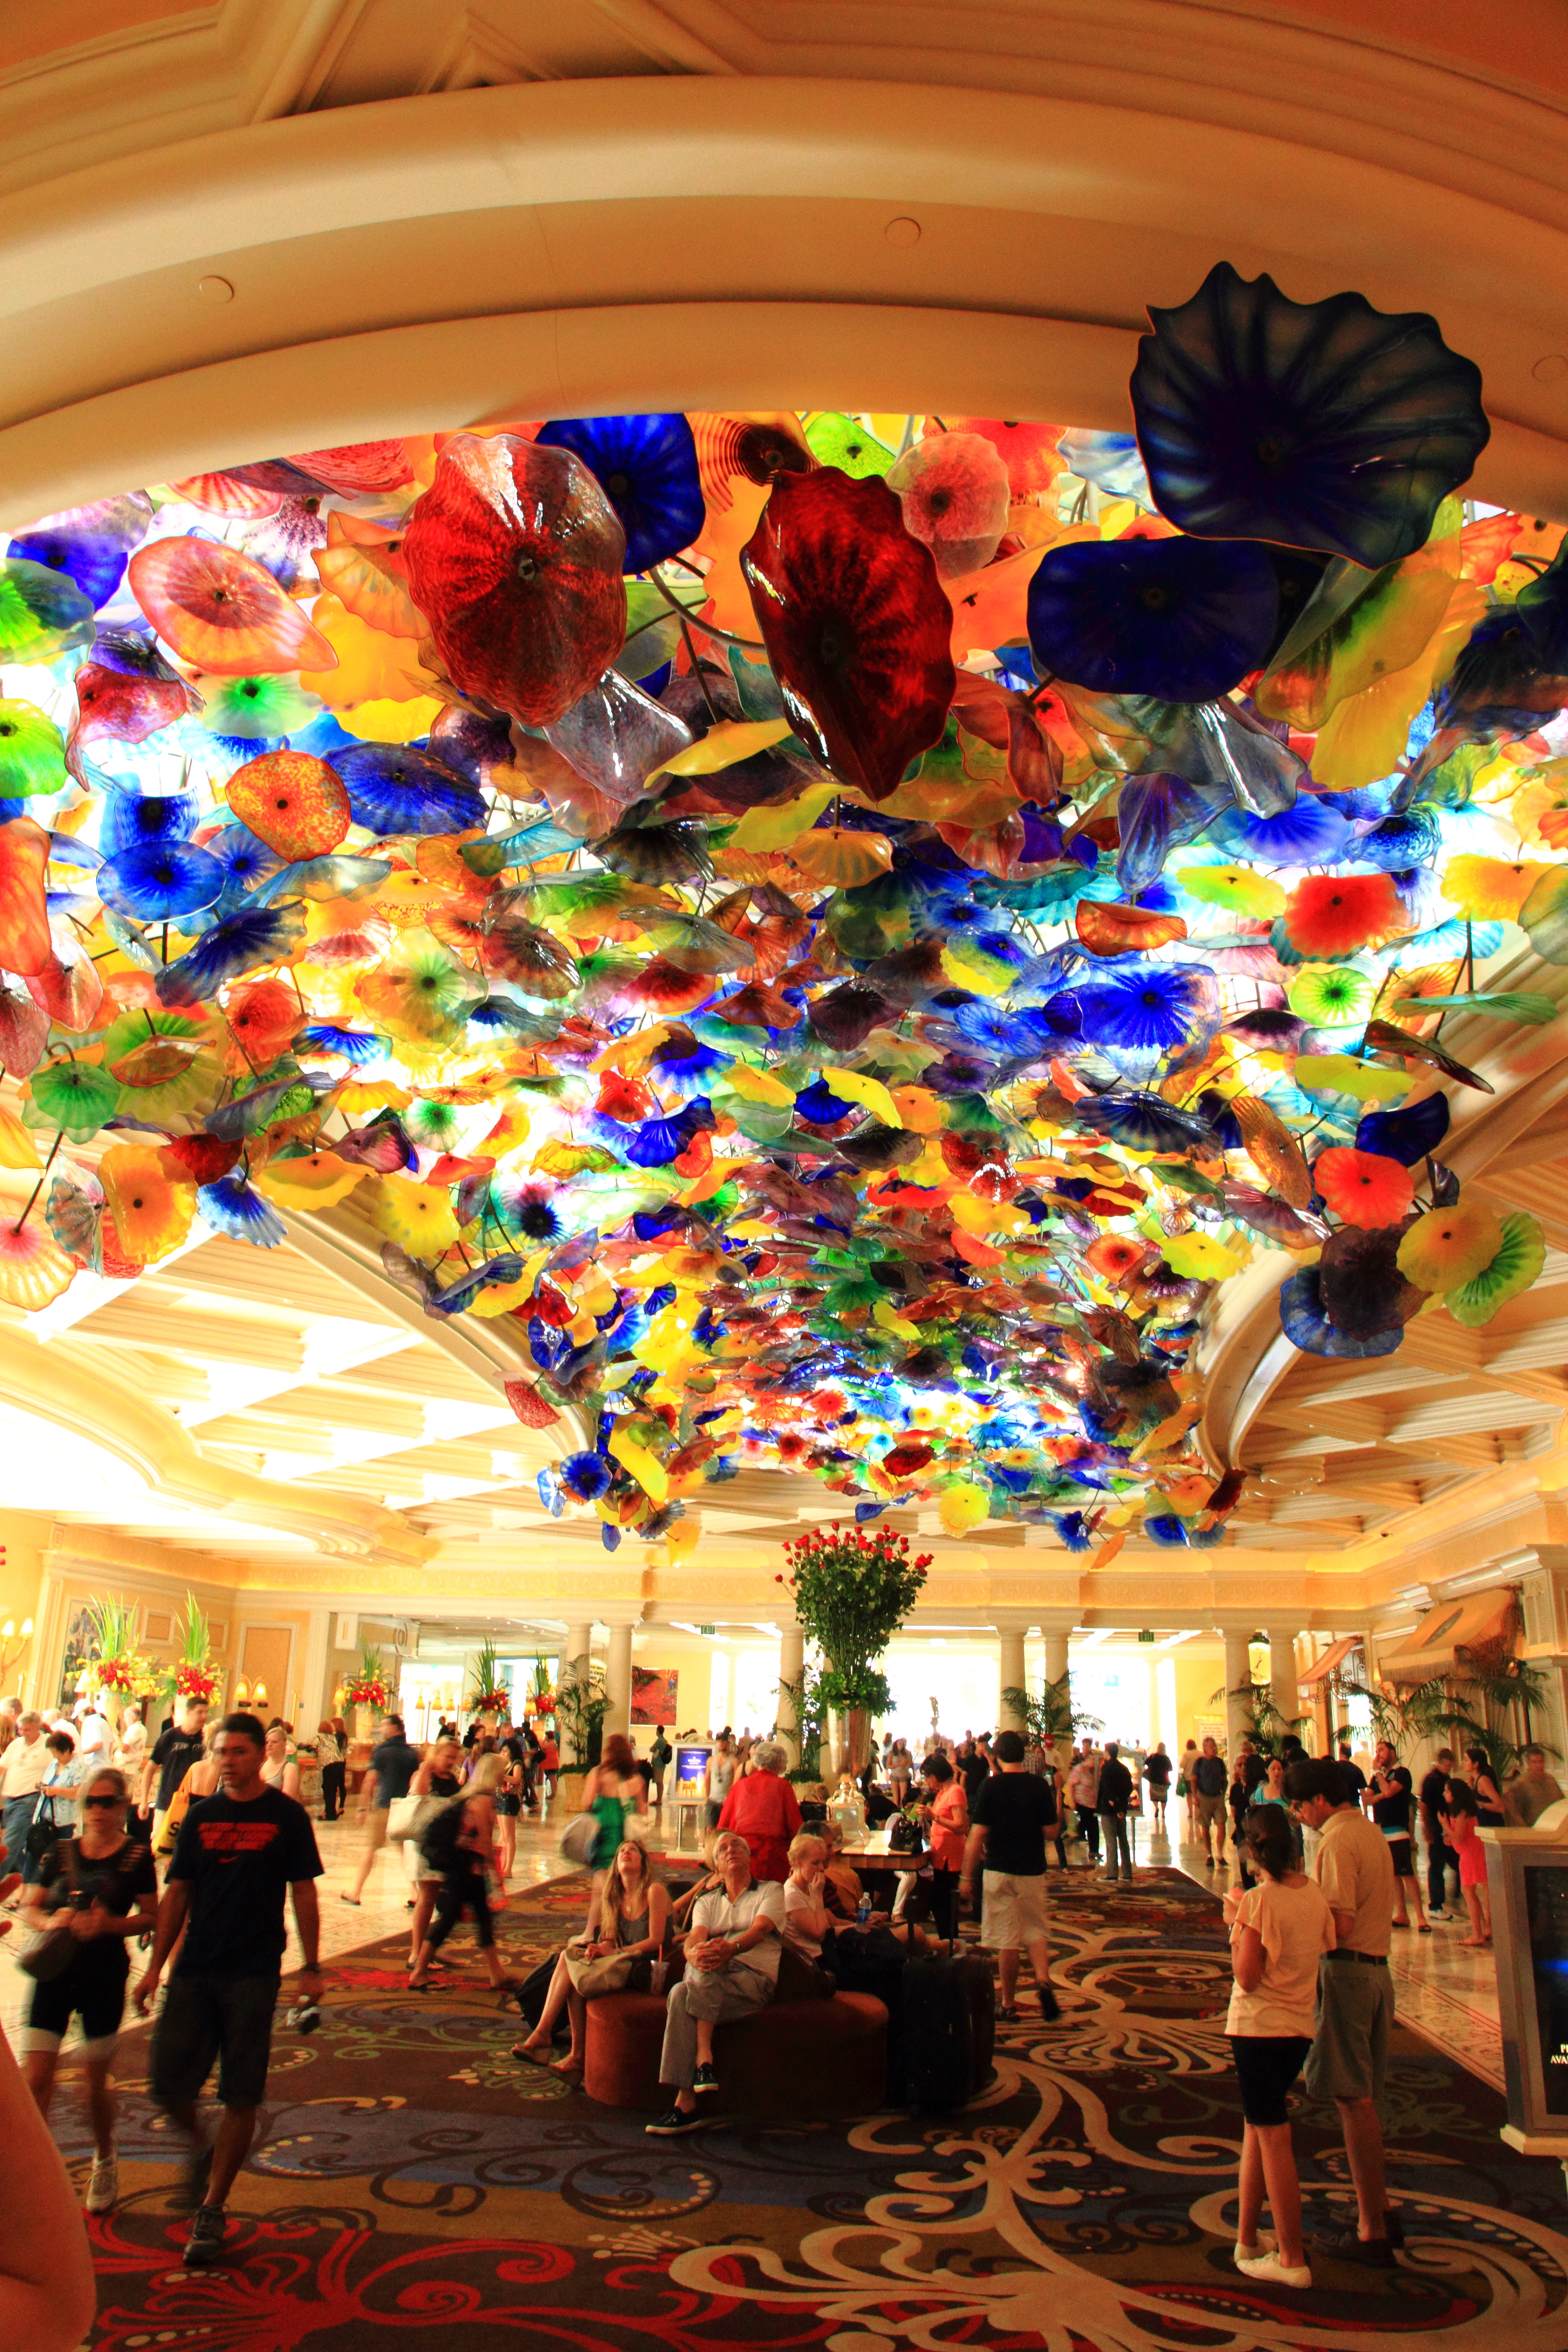 Las Vegas Bellagio Lobby By Kalsteine On Deviantart